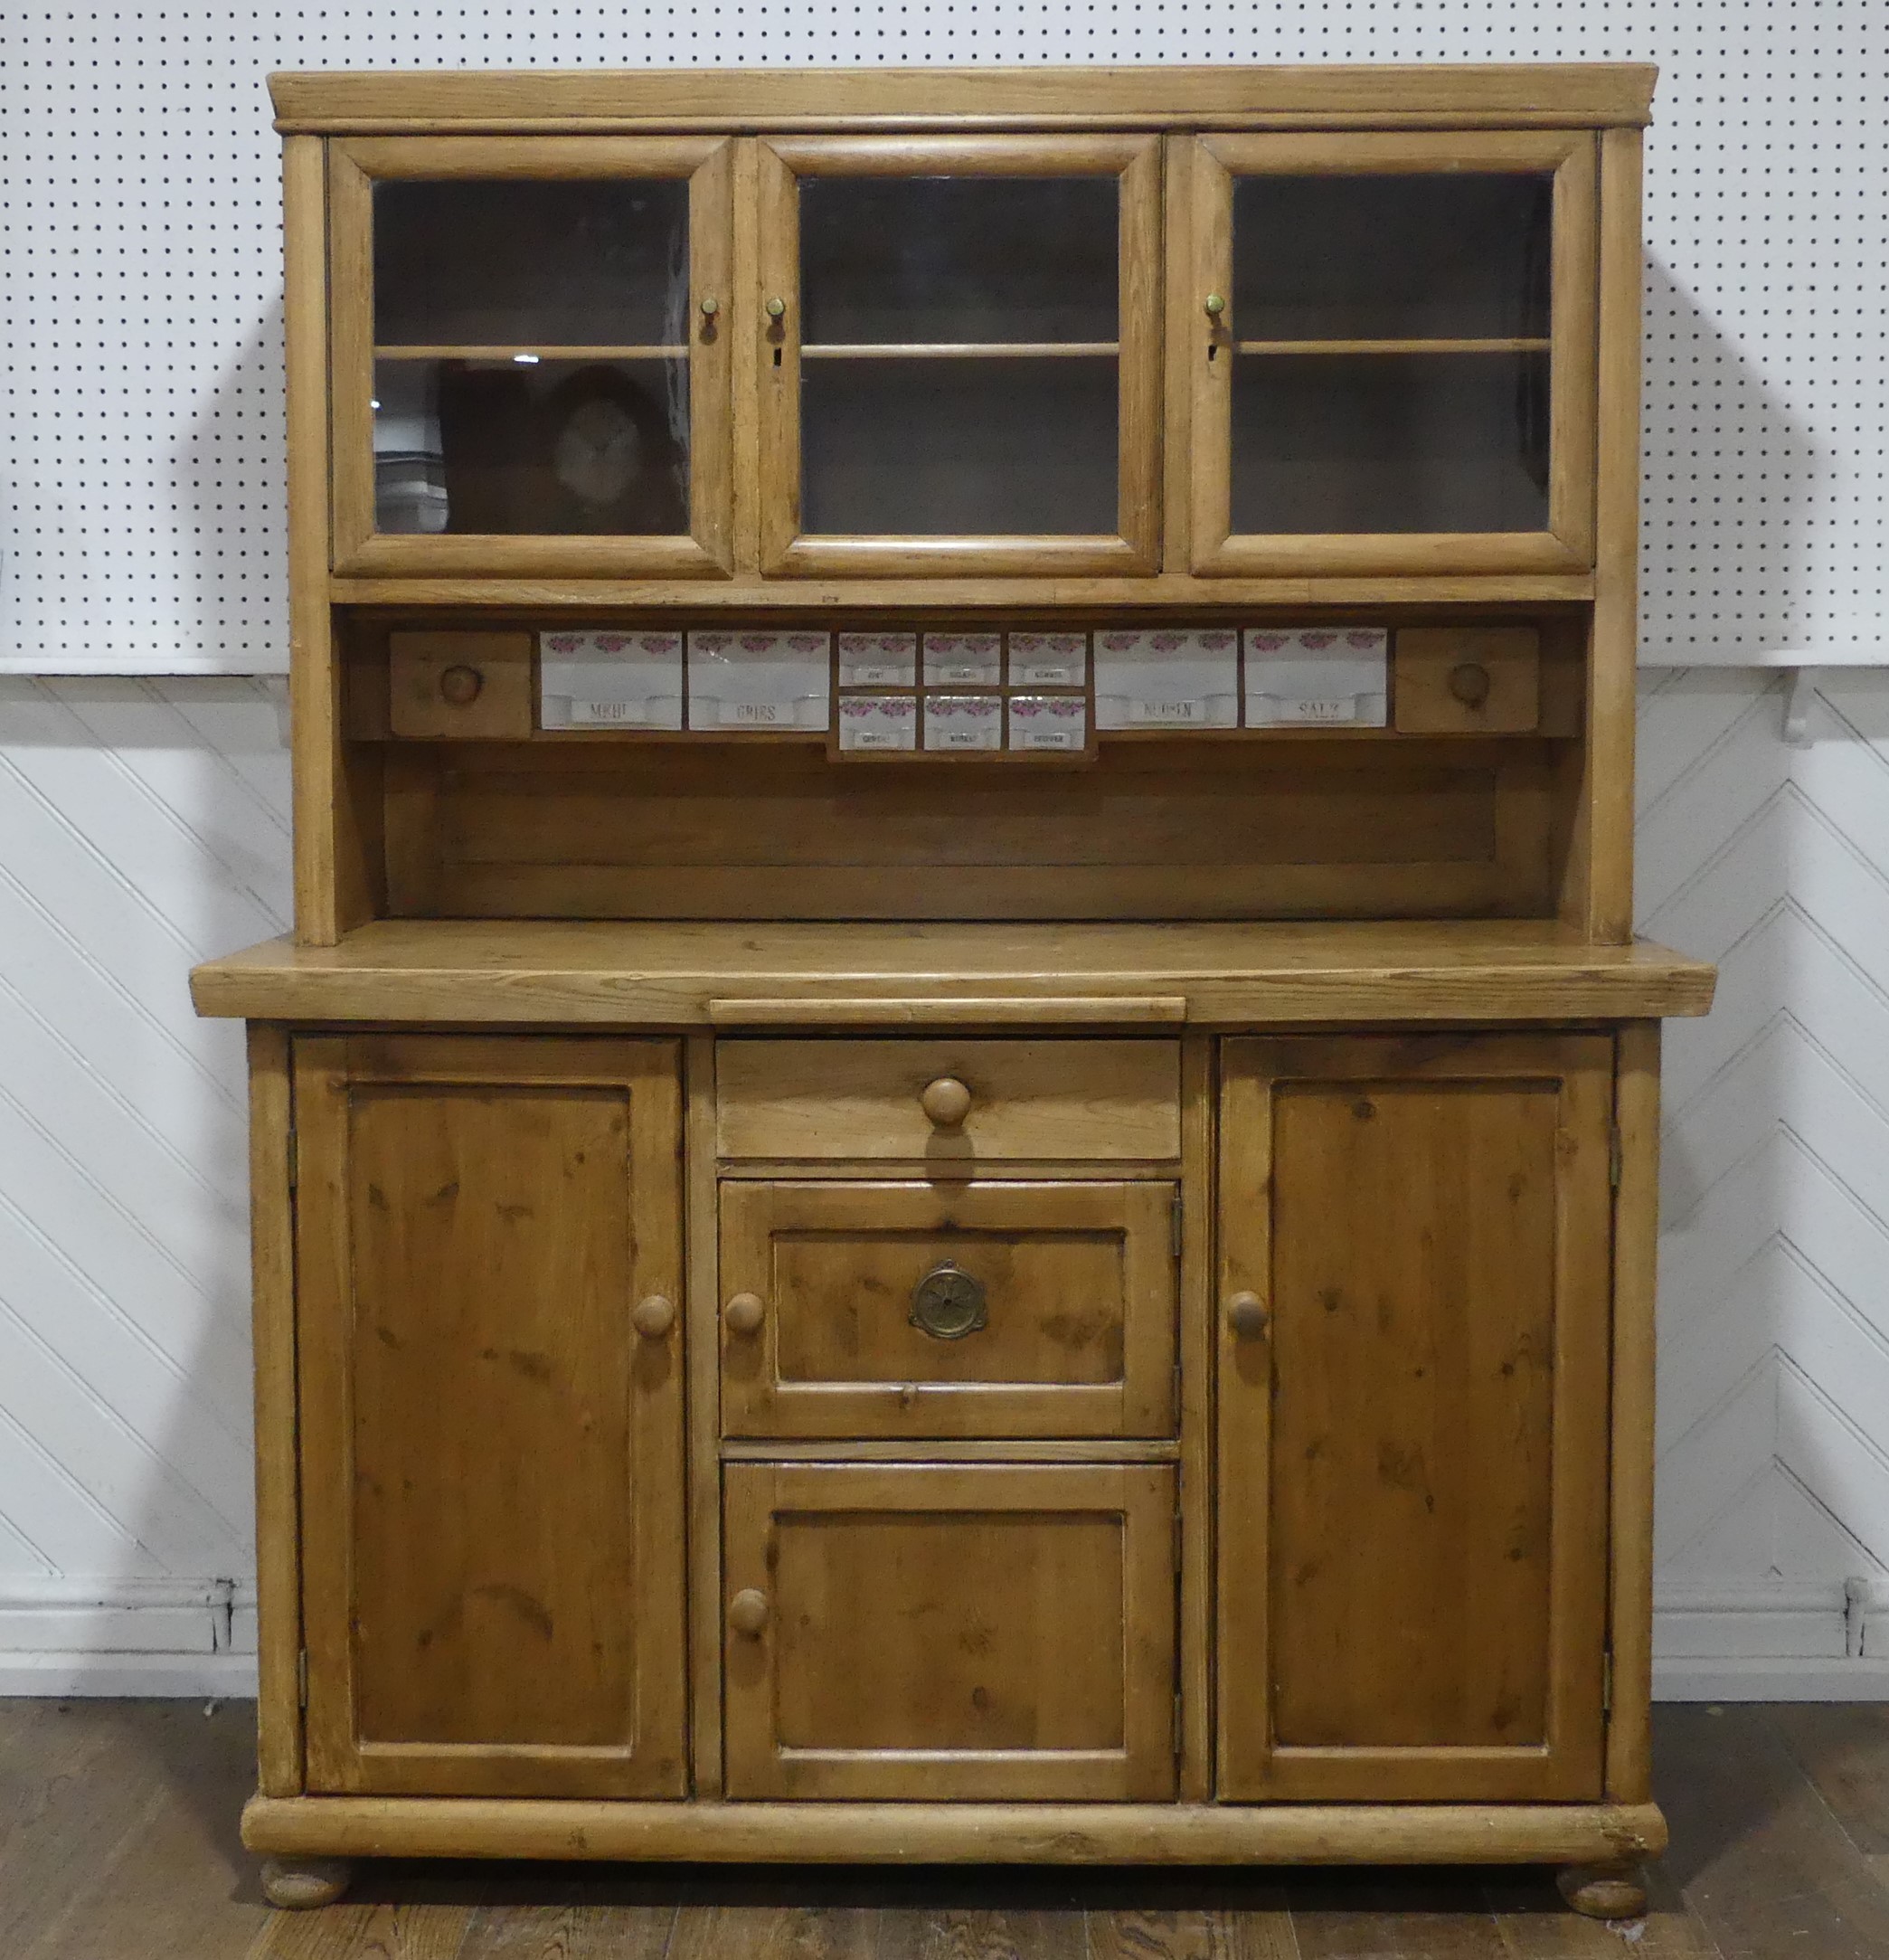 An Early 20thC glazed pine Dresser, with ceramic spice draws, W 137cm x H 173cm x D 55.5cm.